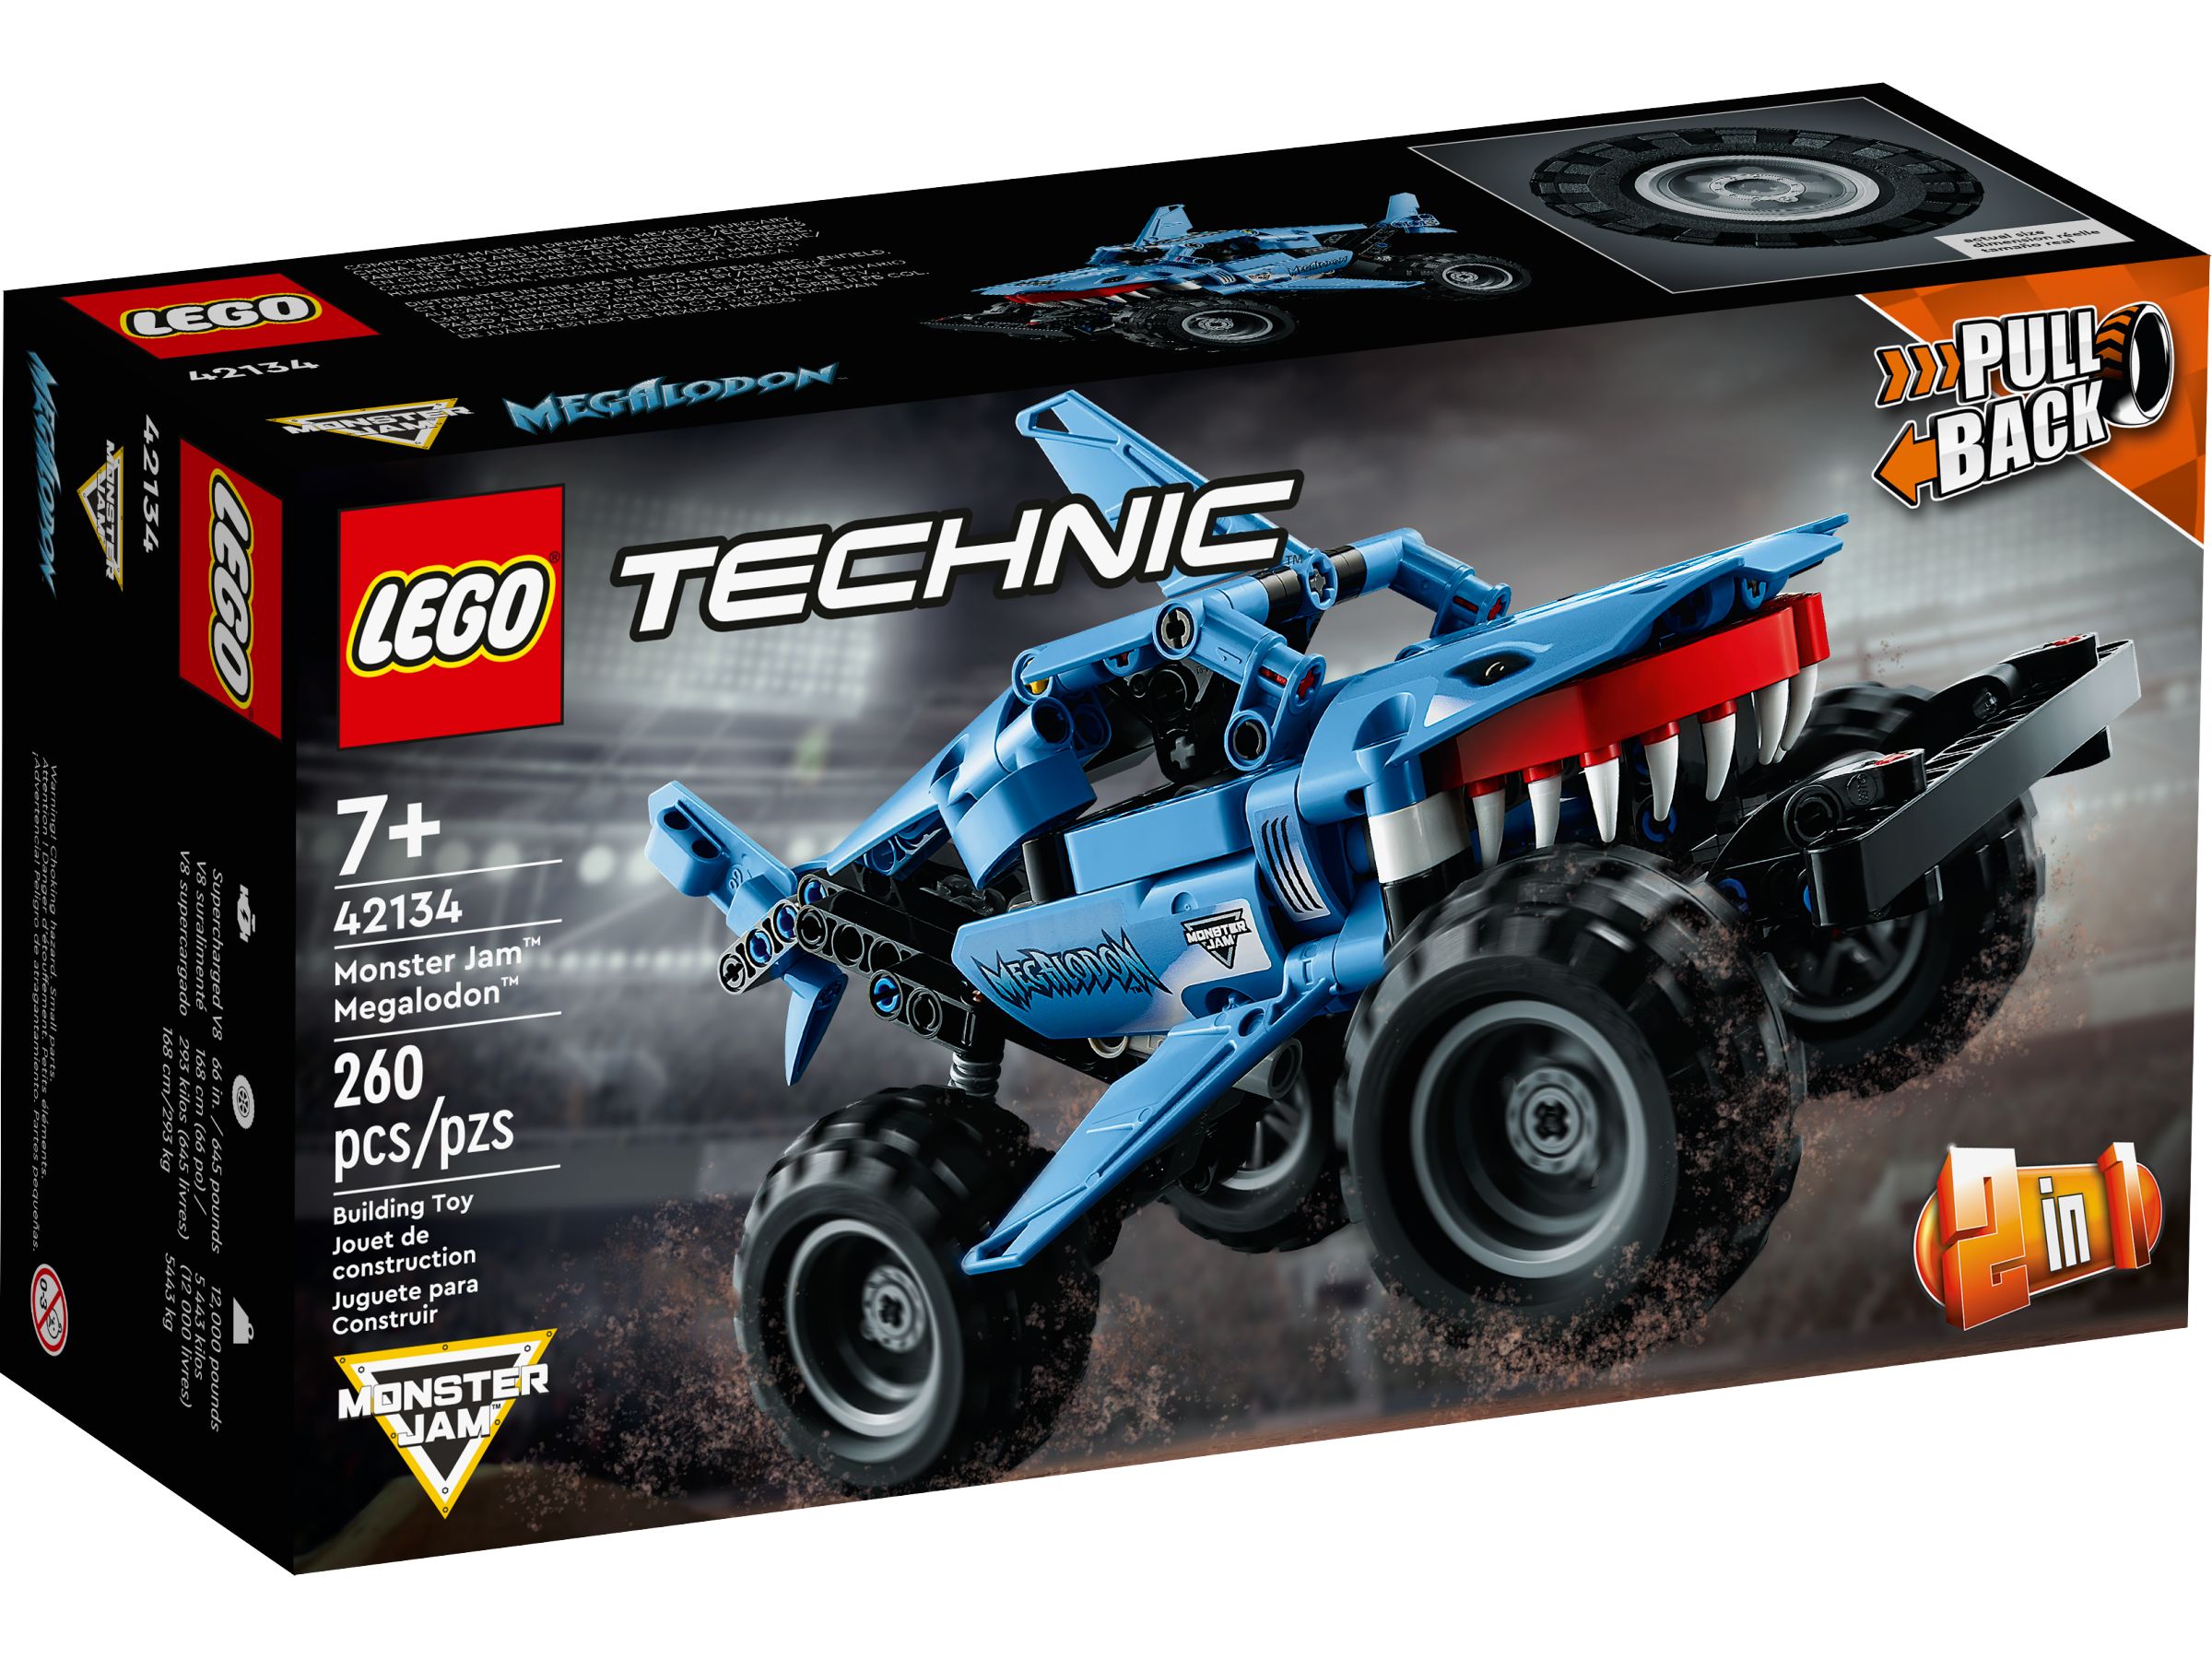 LEGO Technic 42134 Monster Jam™ Megalodon™ LEGO_42134_alt1.jpg